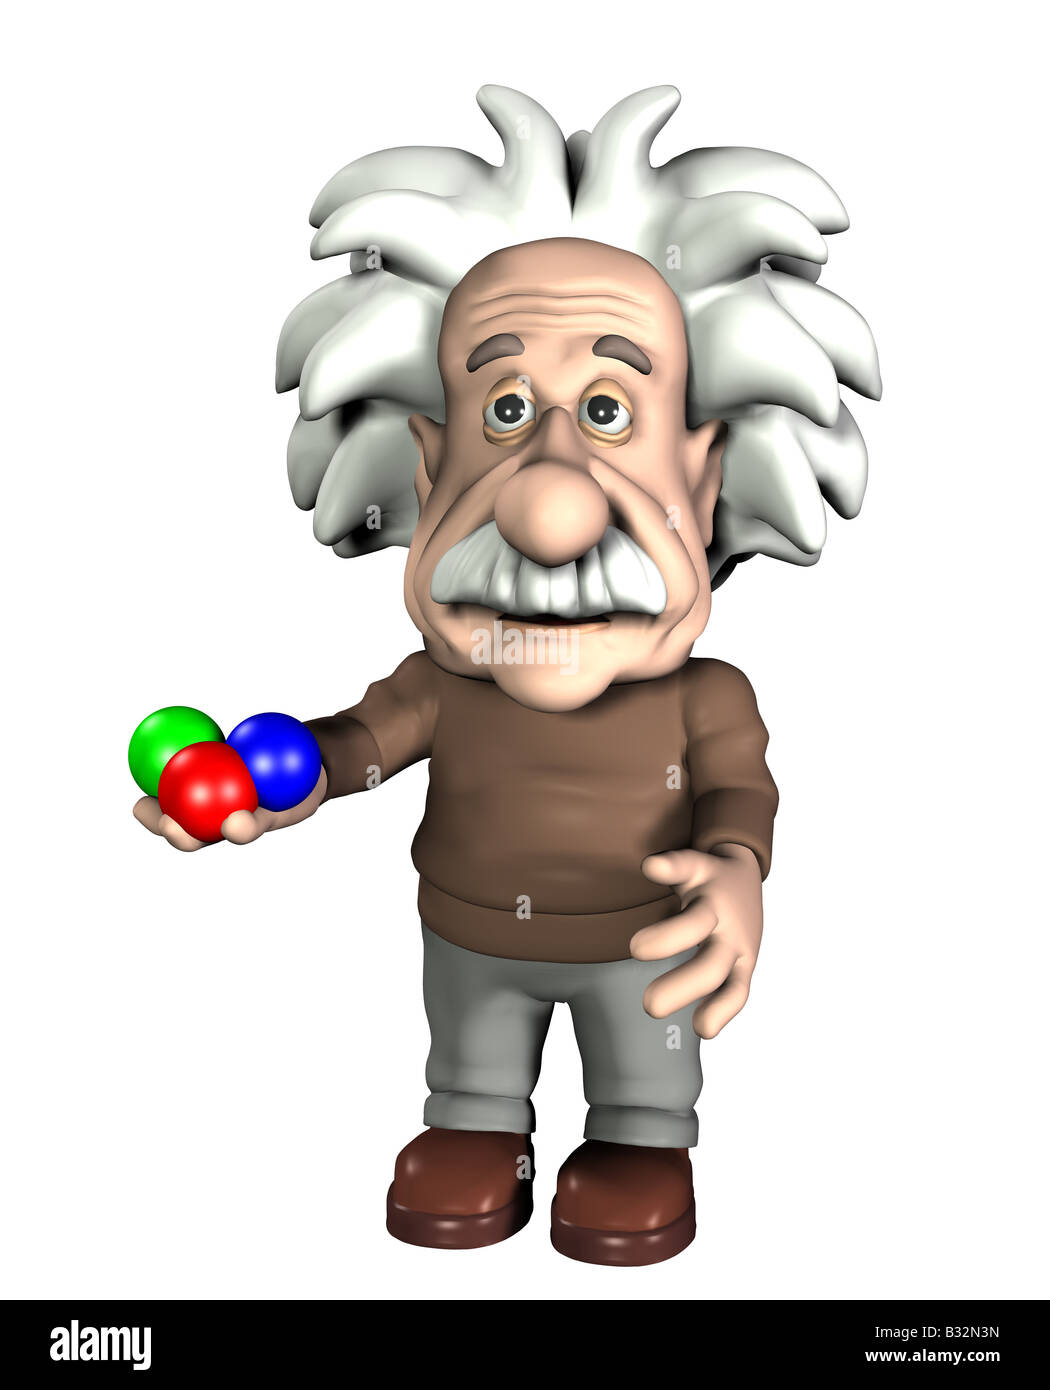 Albert Einstein with quarks Stock Photo